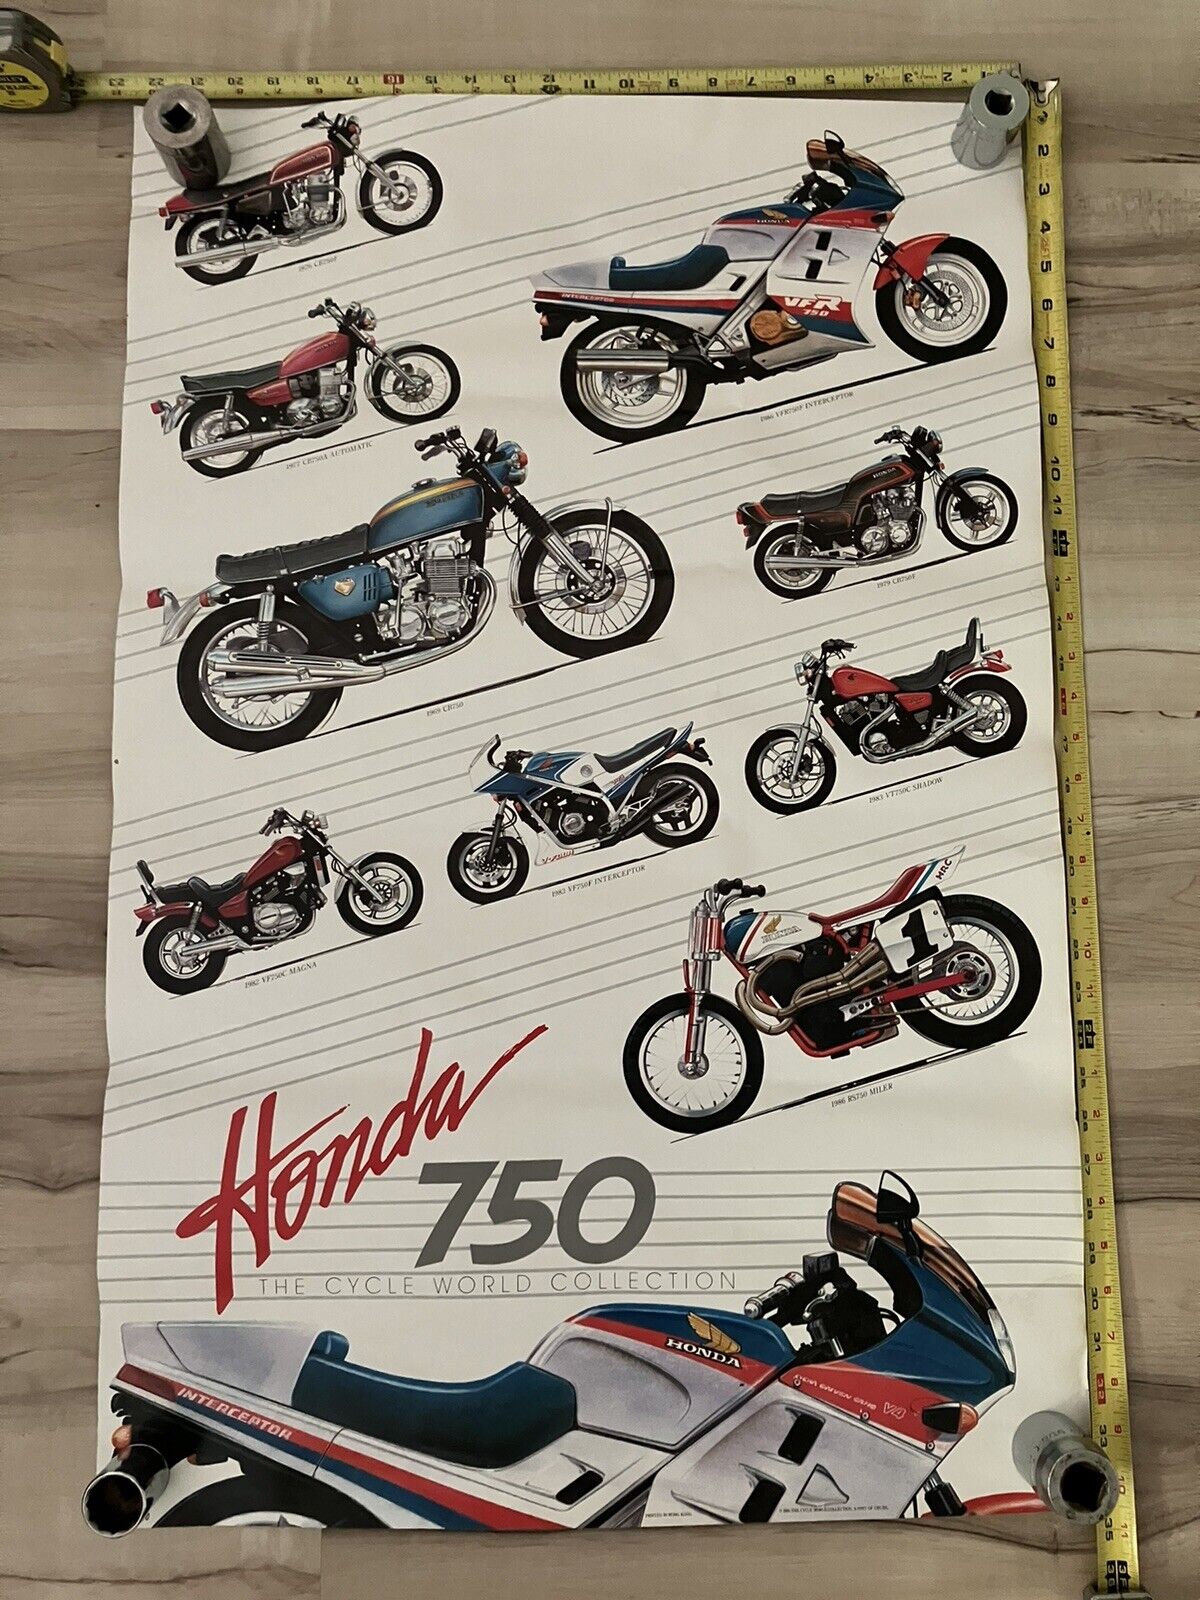 Honda Motocycle 750 Poster 1986 ~22.5”x34.5”